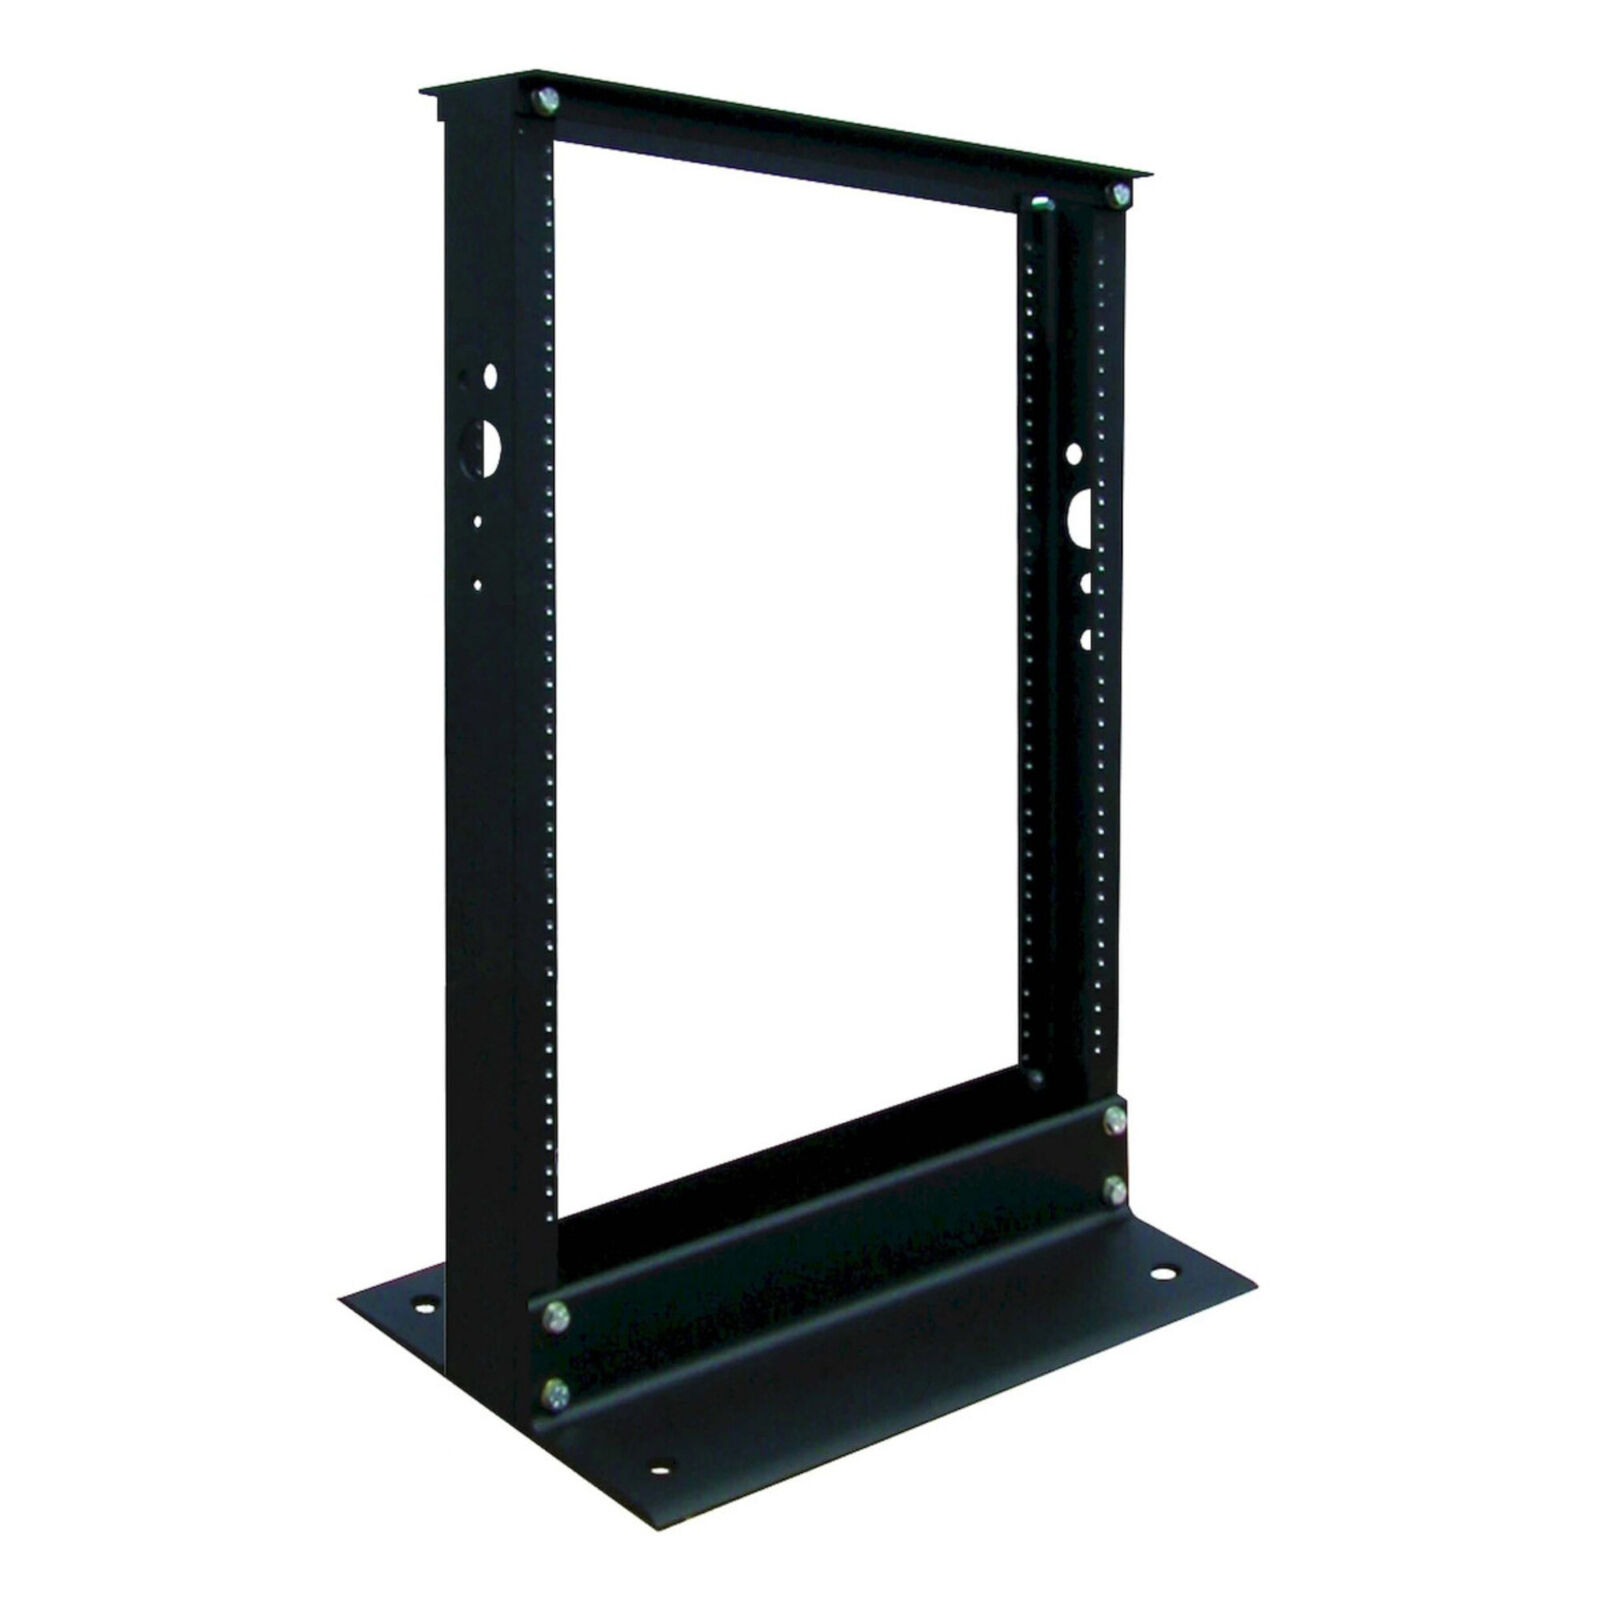 Tripp Lite - SR2POST13 - Rack, 2 Post Open Frame, Aluminium, Black, 711.2 mm,